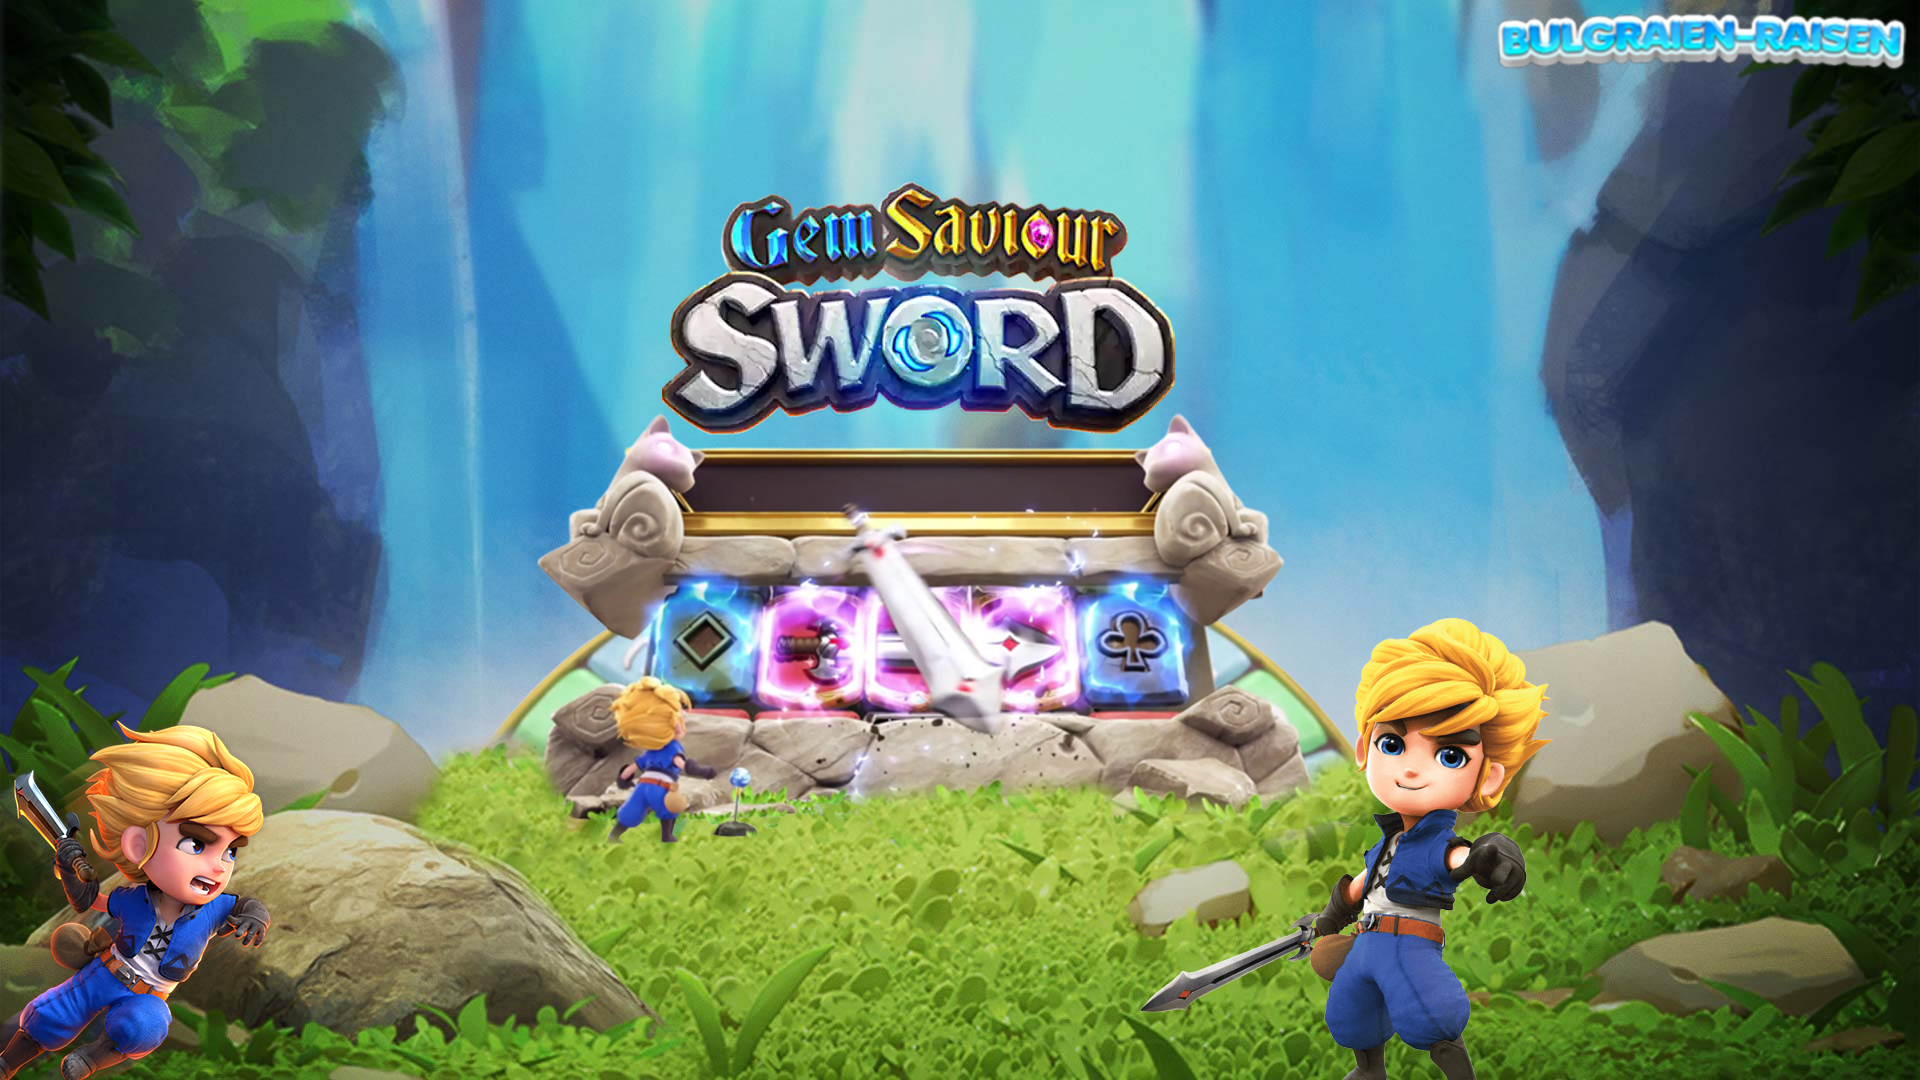 Gem Saviour Sword PgSoft